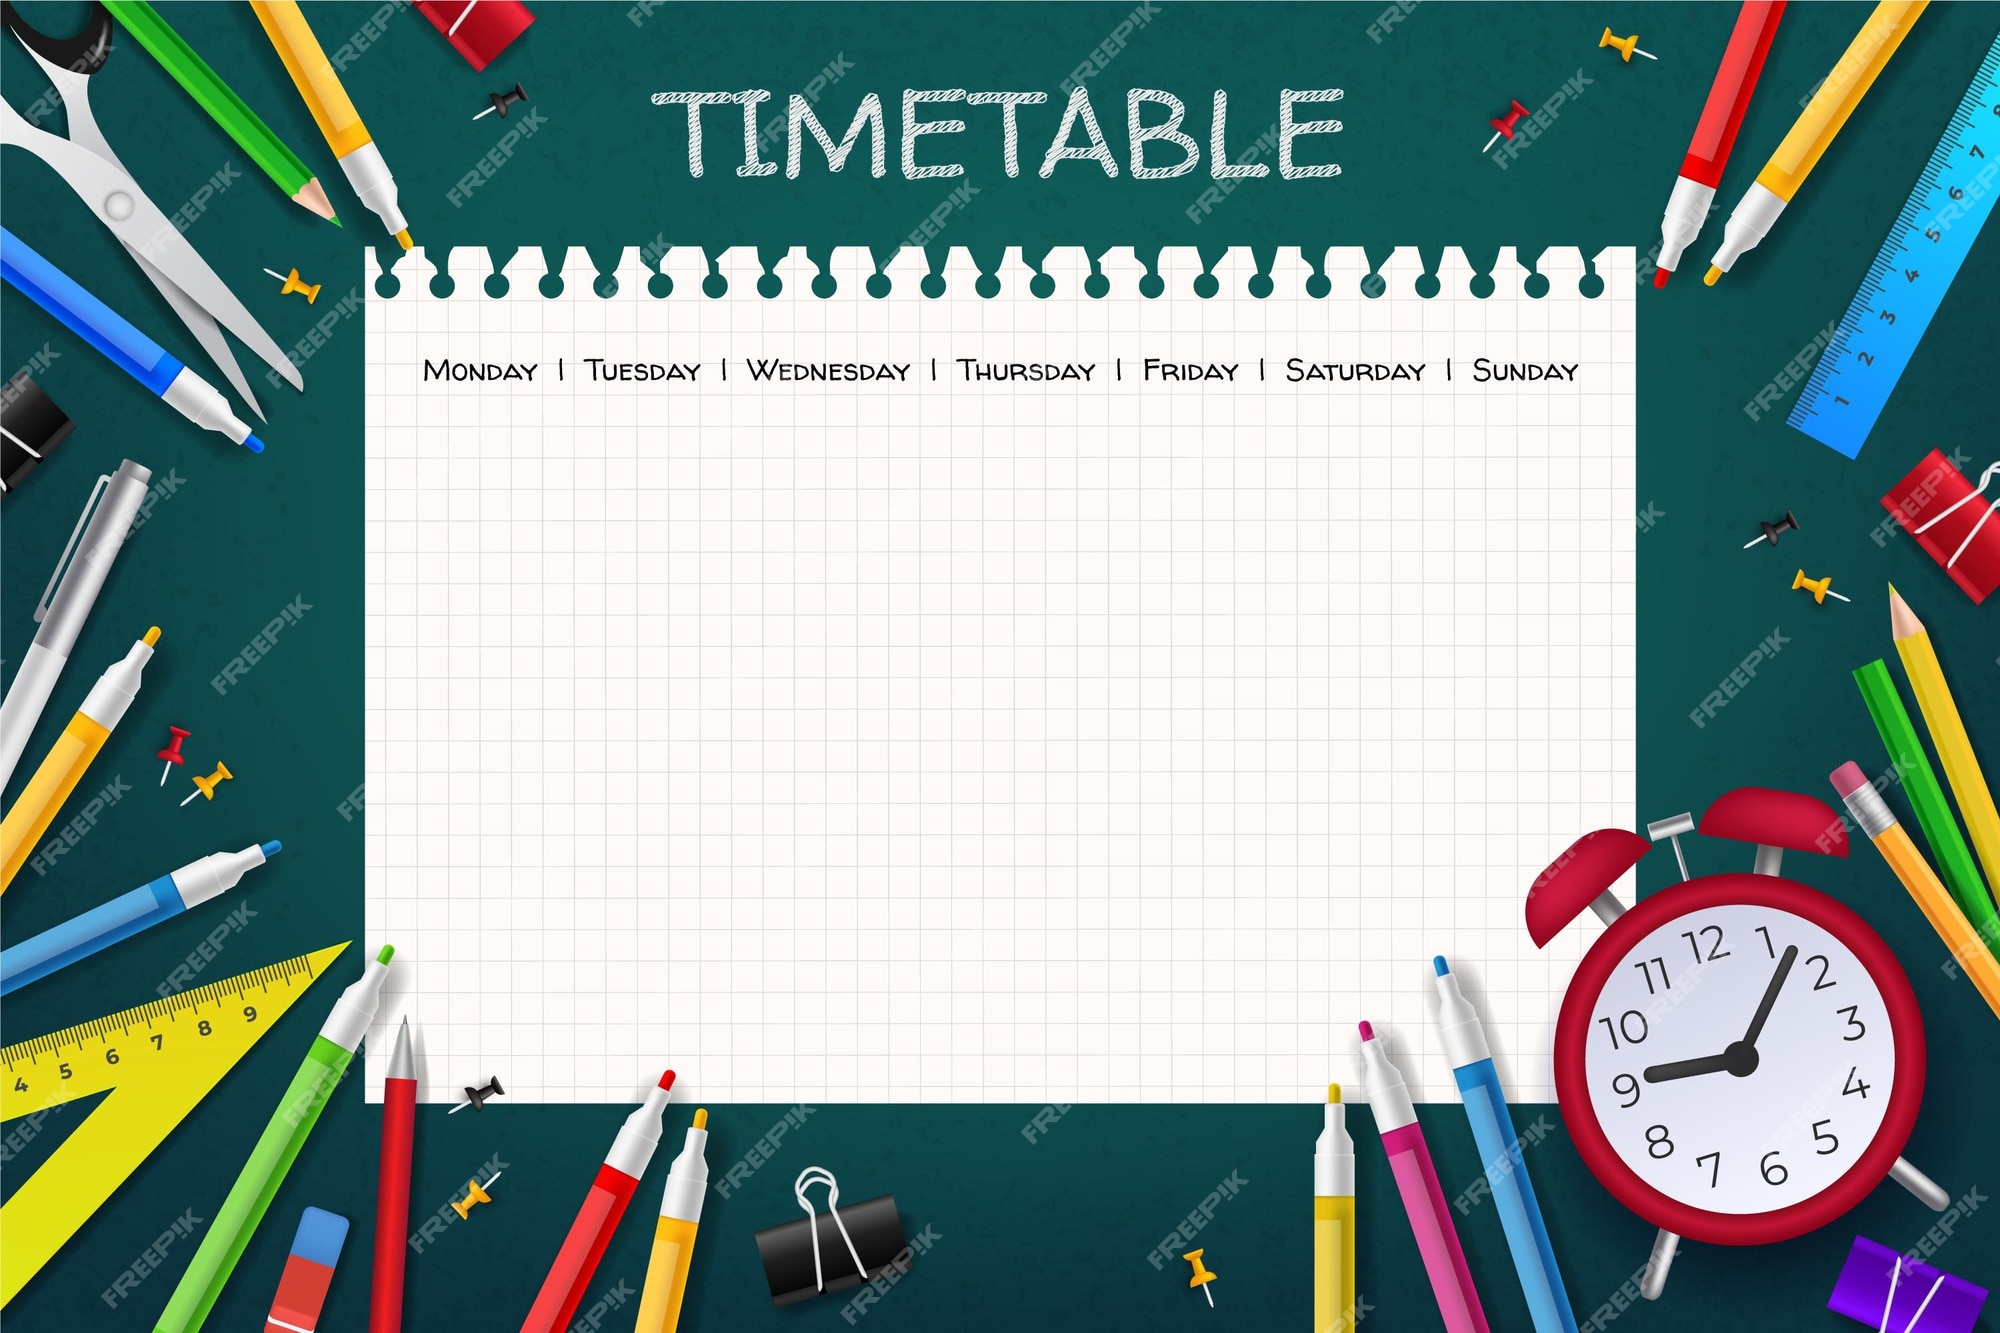 Details 300 timetable background design